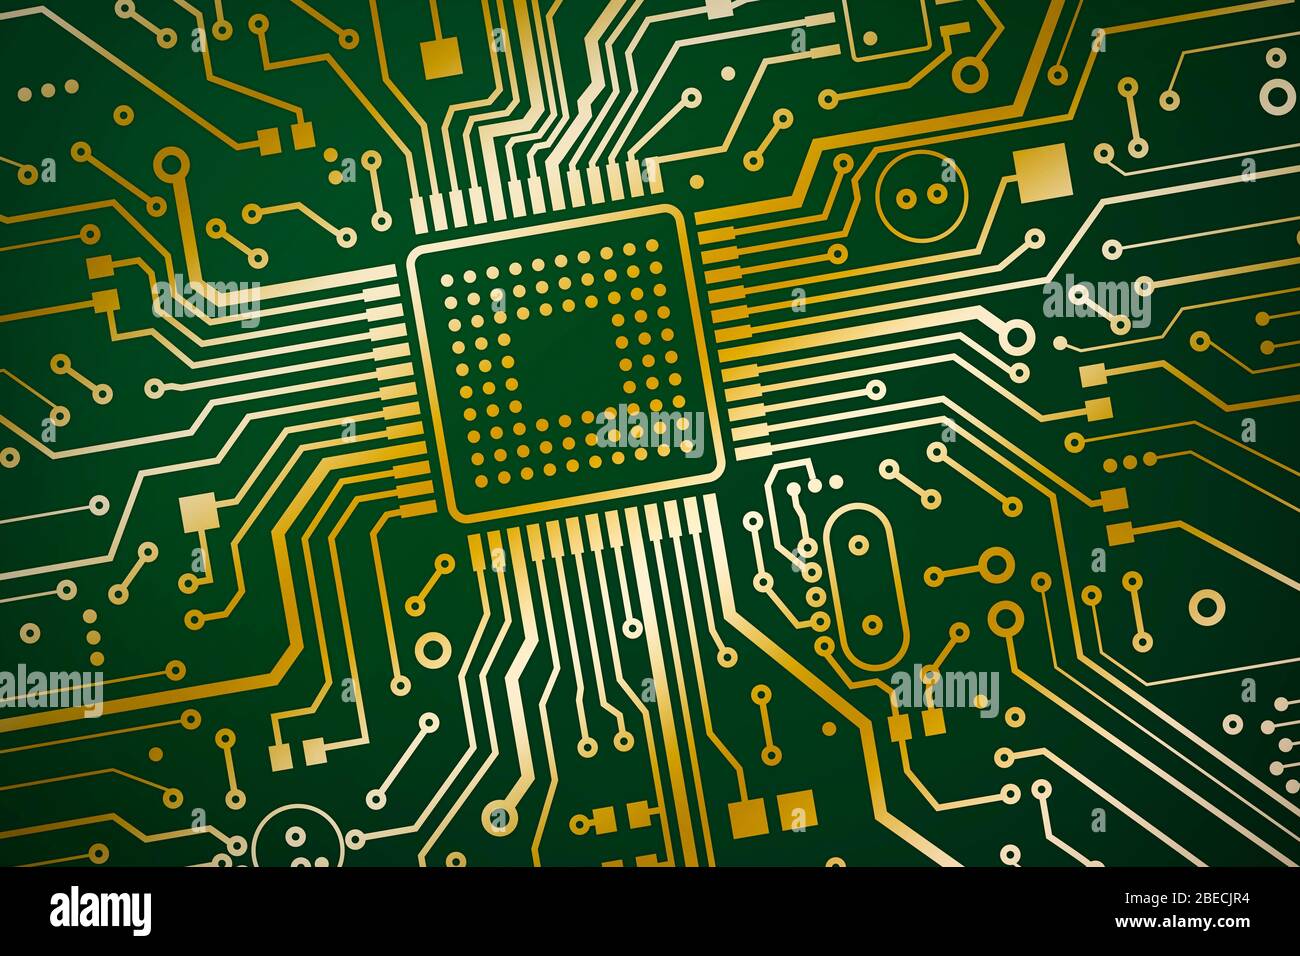 Technologies De L Information Microchip Sur Carte De Circuit Imprime Vue De Dessus Illustration Photo Stock Alamy